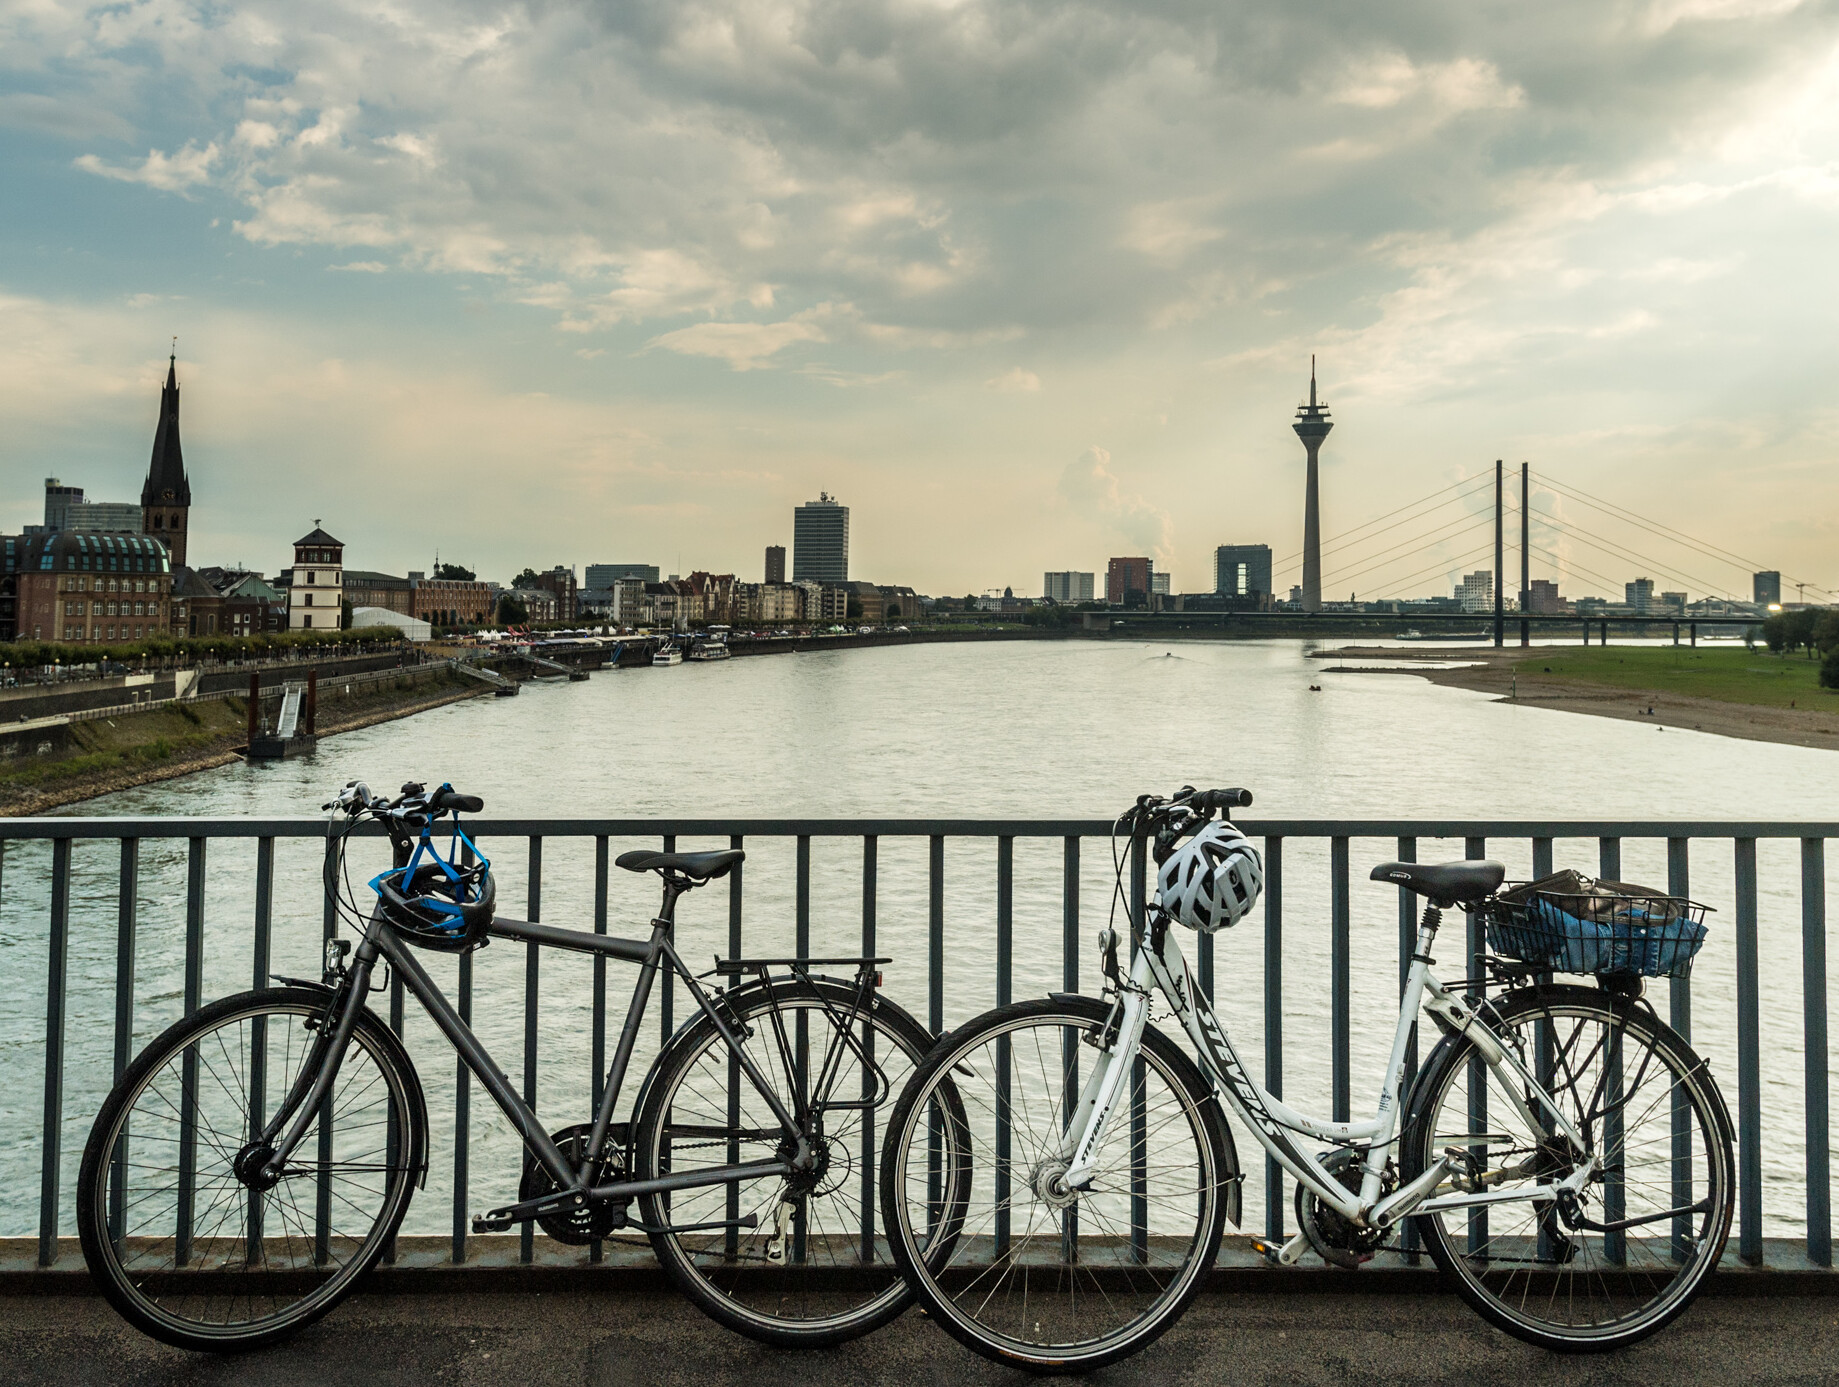 Blick auf die Skyline von Düsseldorf mit Rheinturm. Im Vordergrund stehen zwei Fahrräder auf einer Brücke über den Rhein. © Tourismus NRW e.V./Dominik Ketz